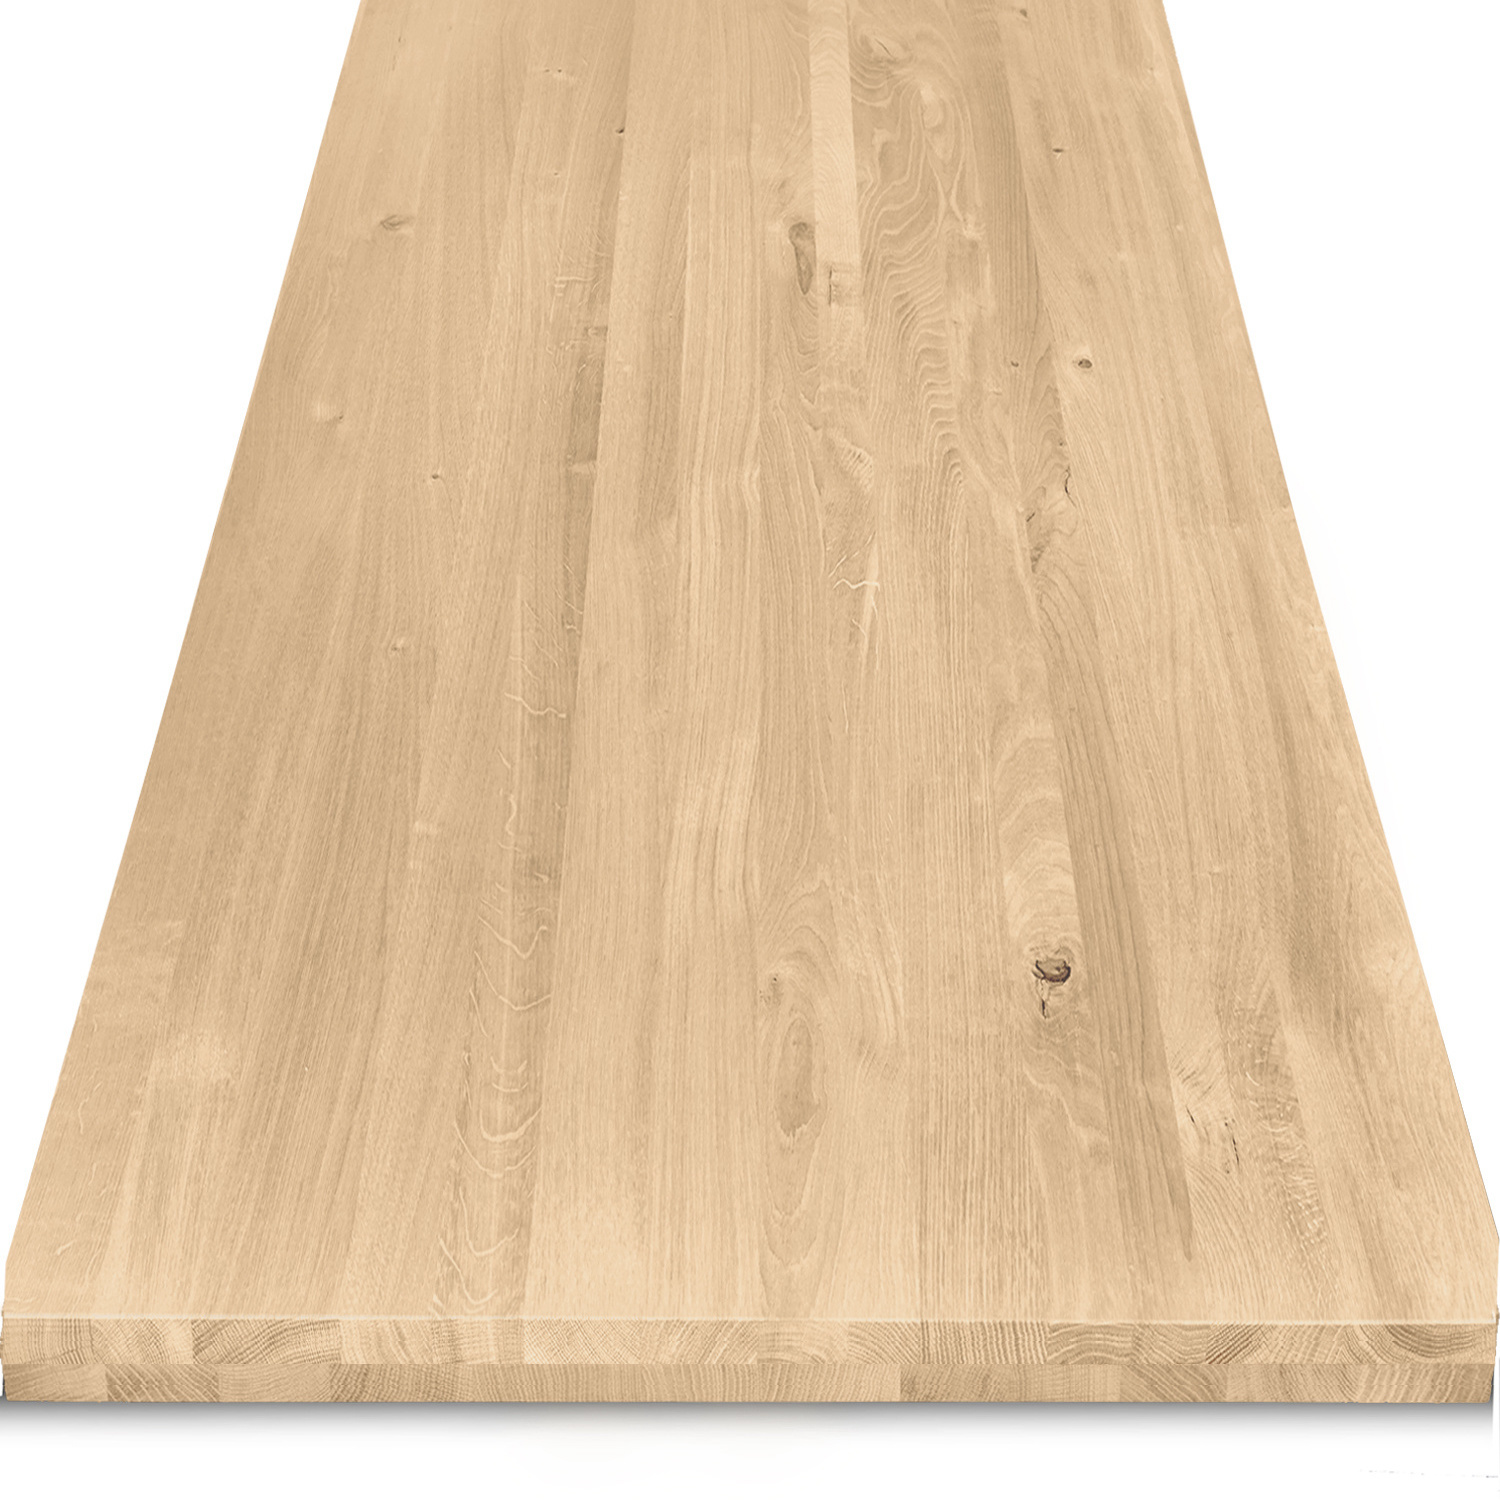  Eiken tafelblad op maat - 5 cm dik (2-laags) - rustiek Europees eikenhout - verlijmd kd 8-12% - 50-120x50-350 cm